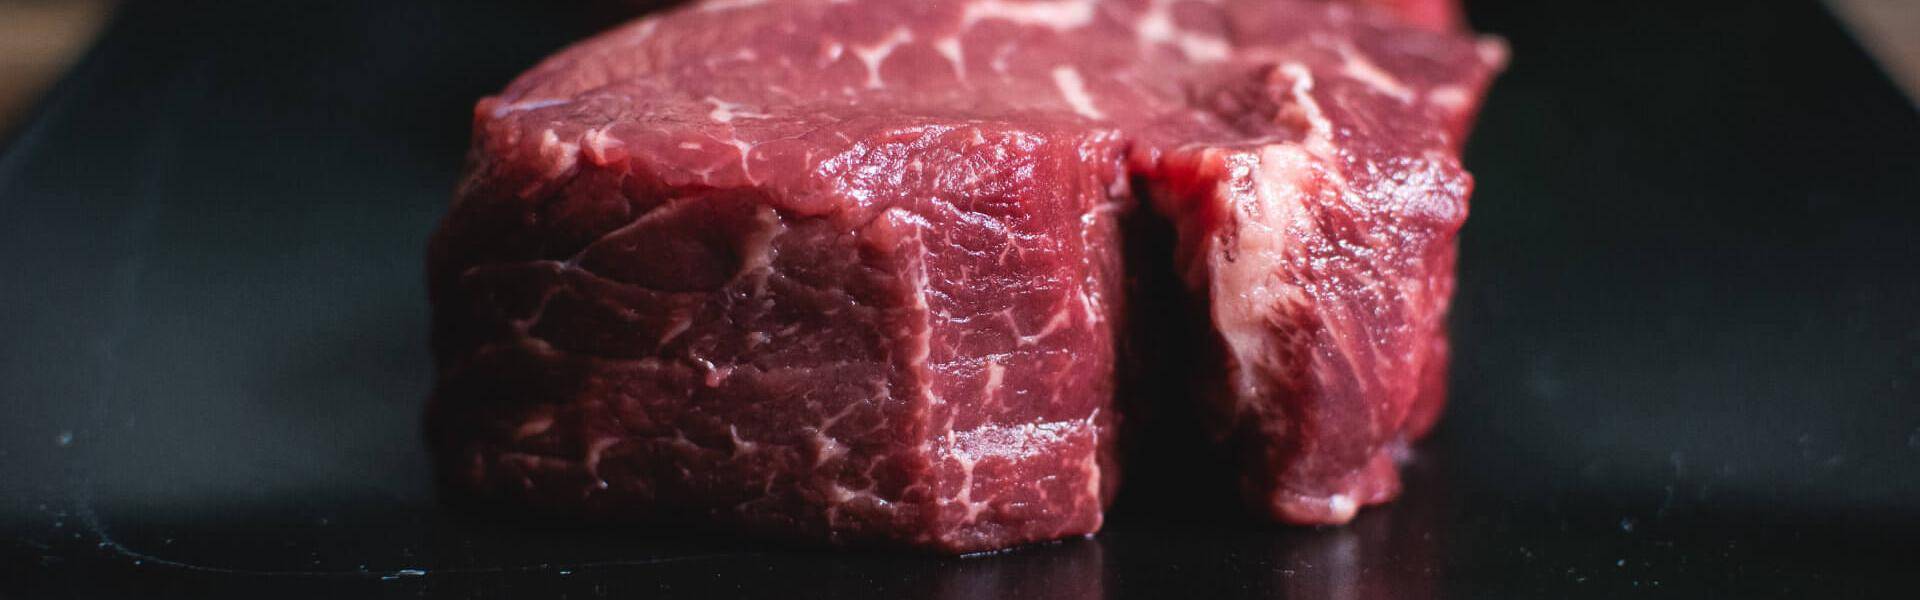 Quando si sceglie di mangiare la carne è fondamentale conoscere il processo che c'è dietro alla lavorazione del prodotto